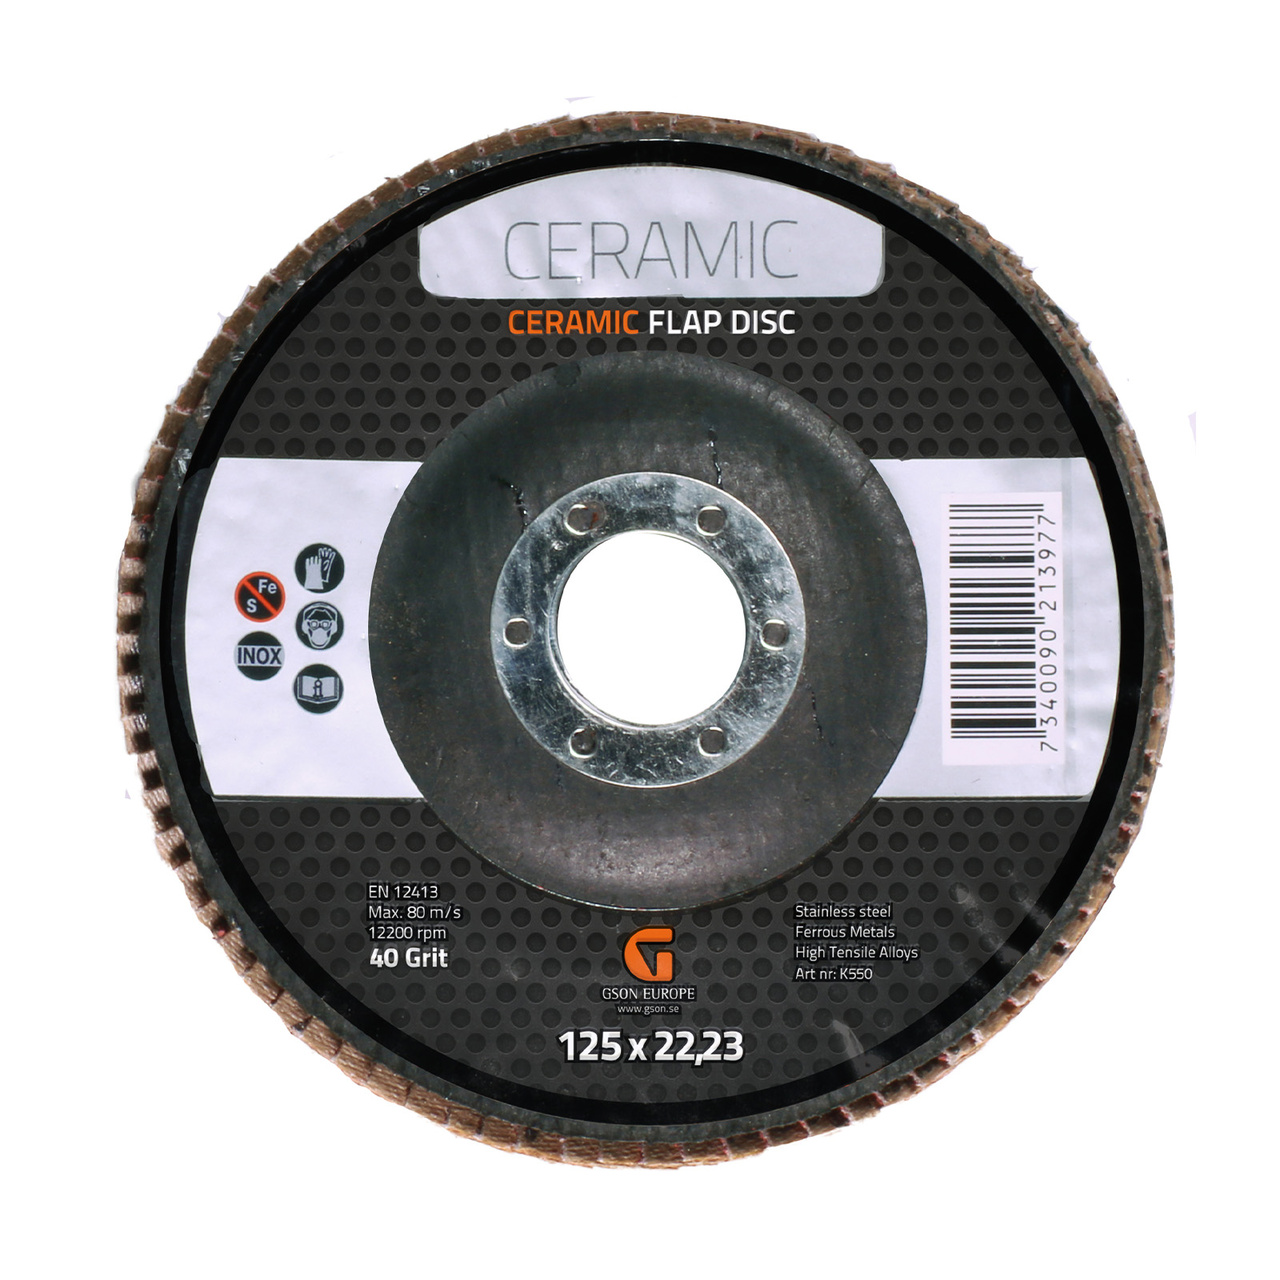 Ceramic Flap Disc